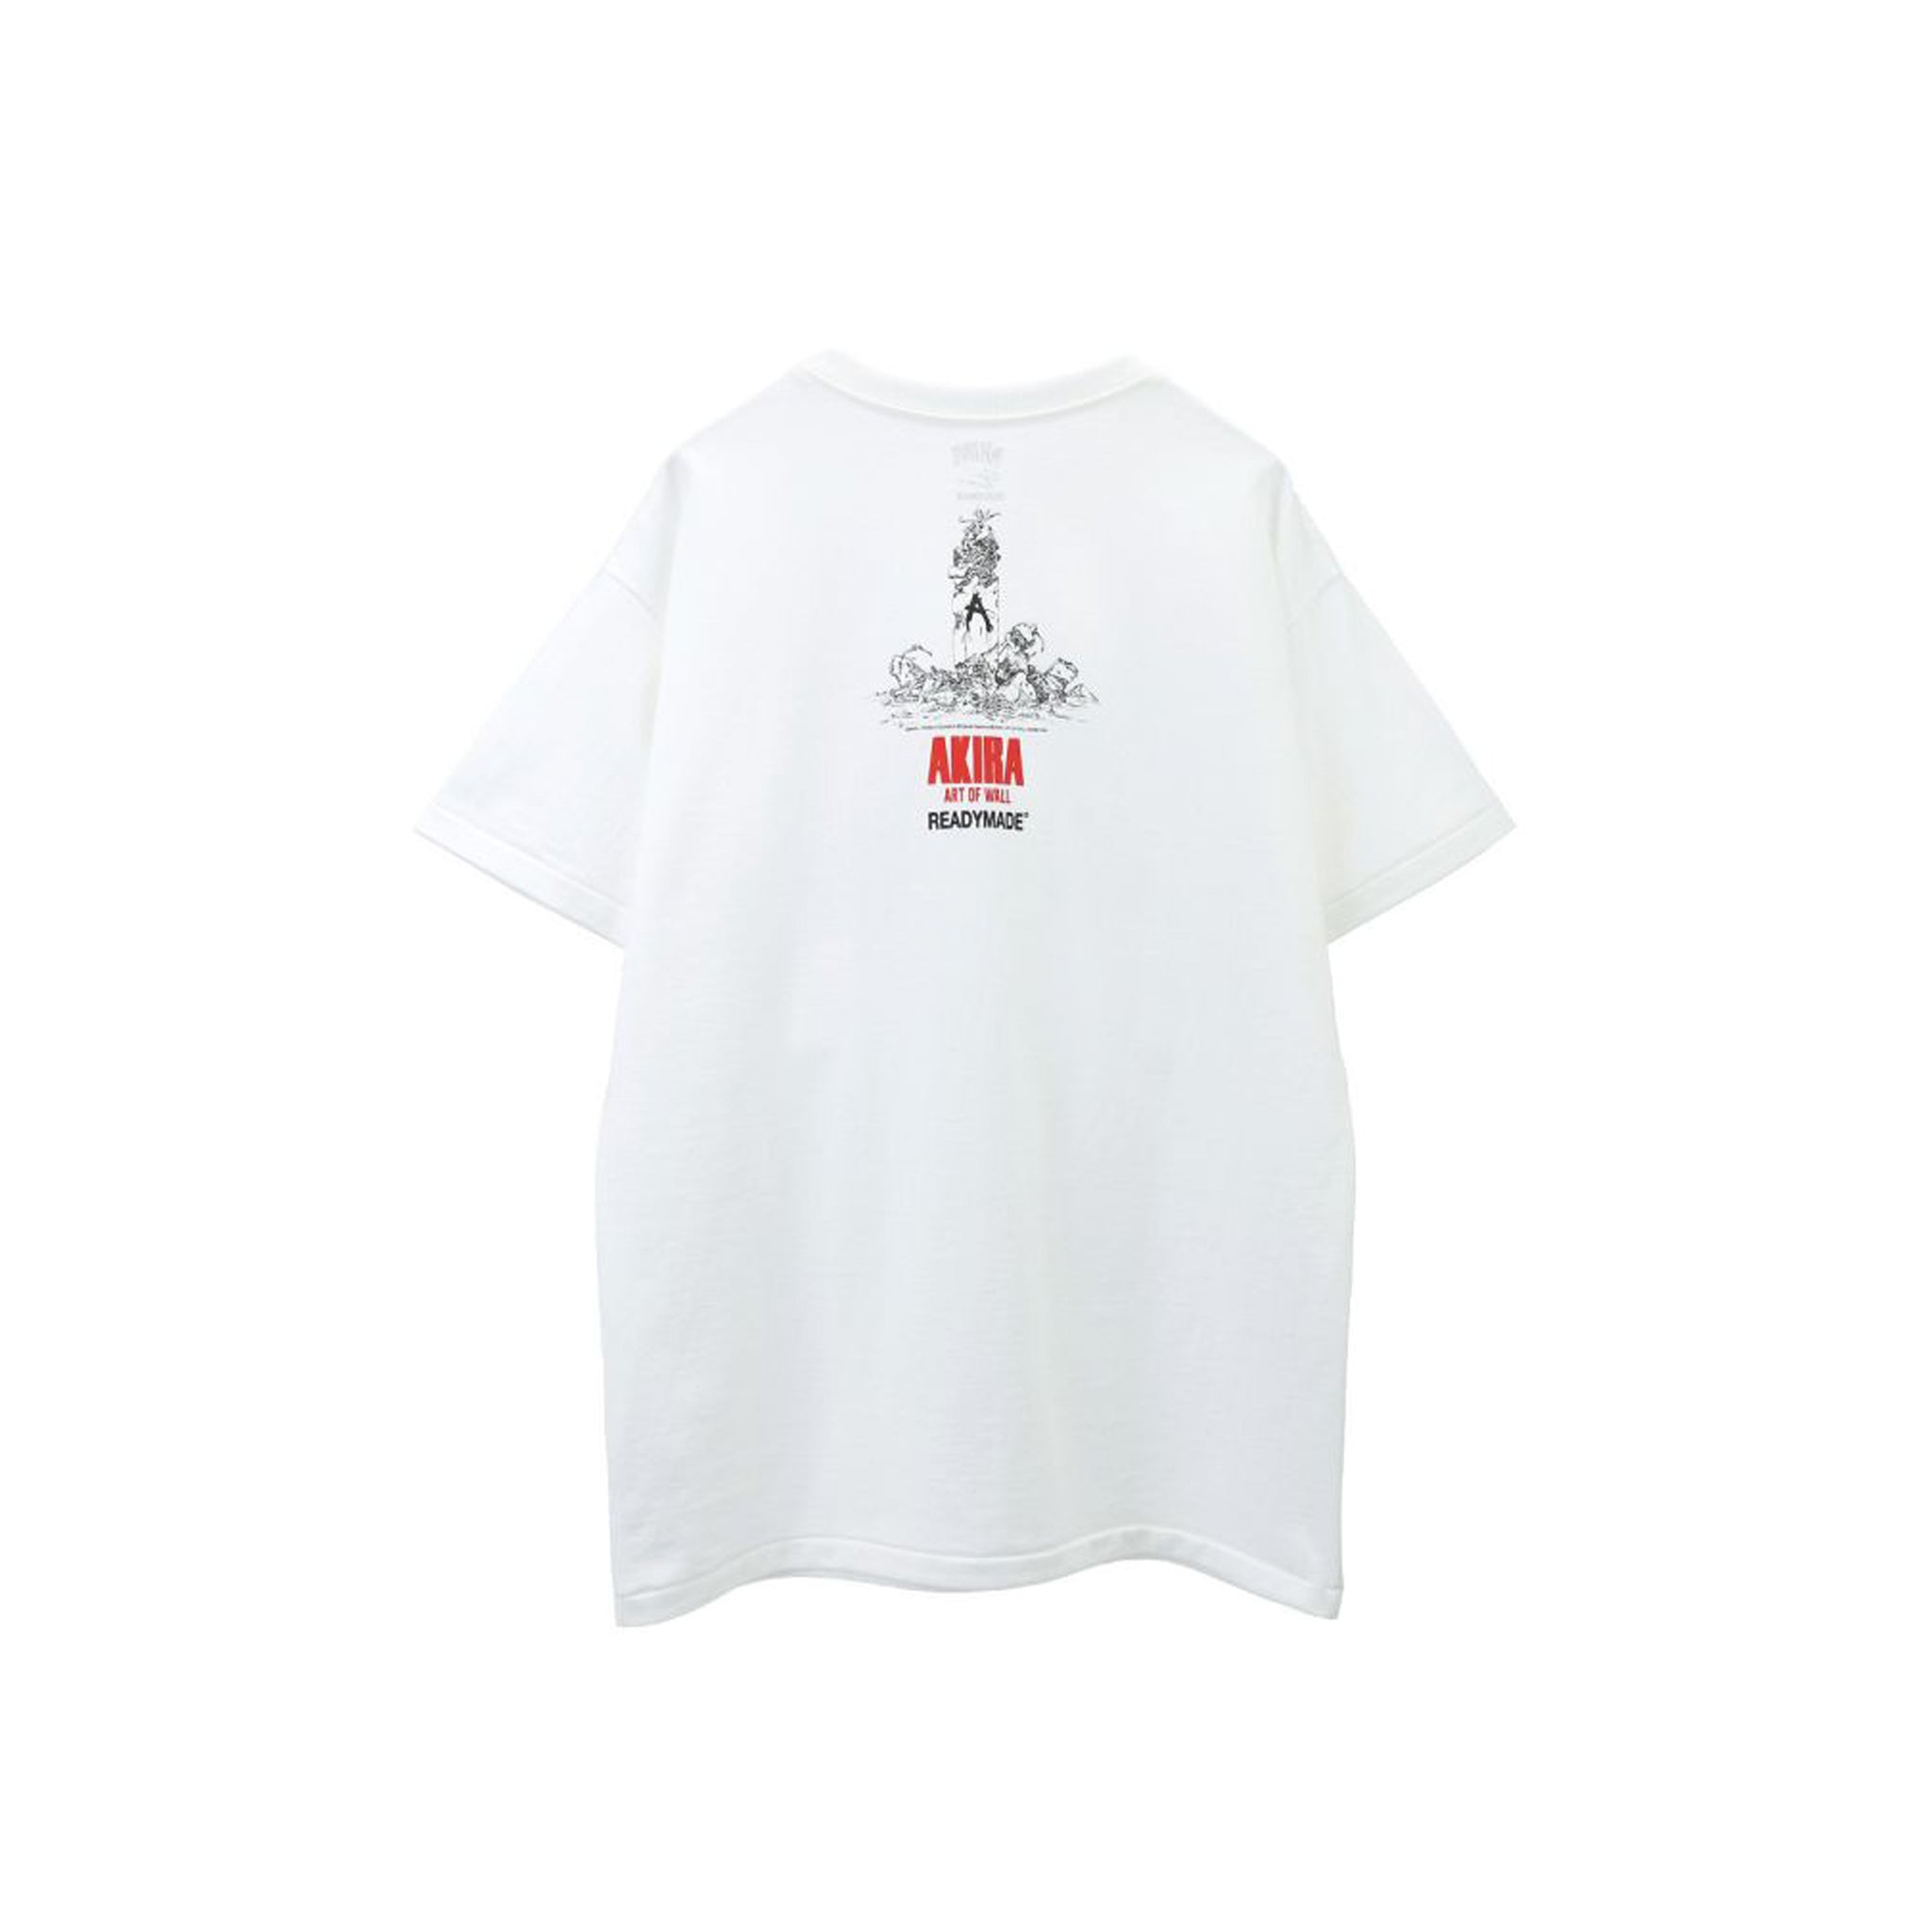 袖丈半袖AKIRA × READYMADE 3 PACK T 渋谷PARCO限定 L - Tシャツ